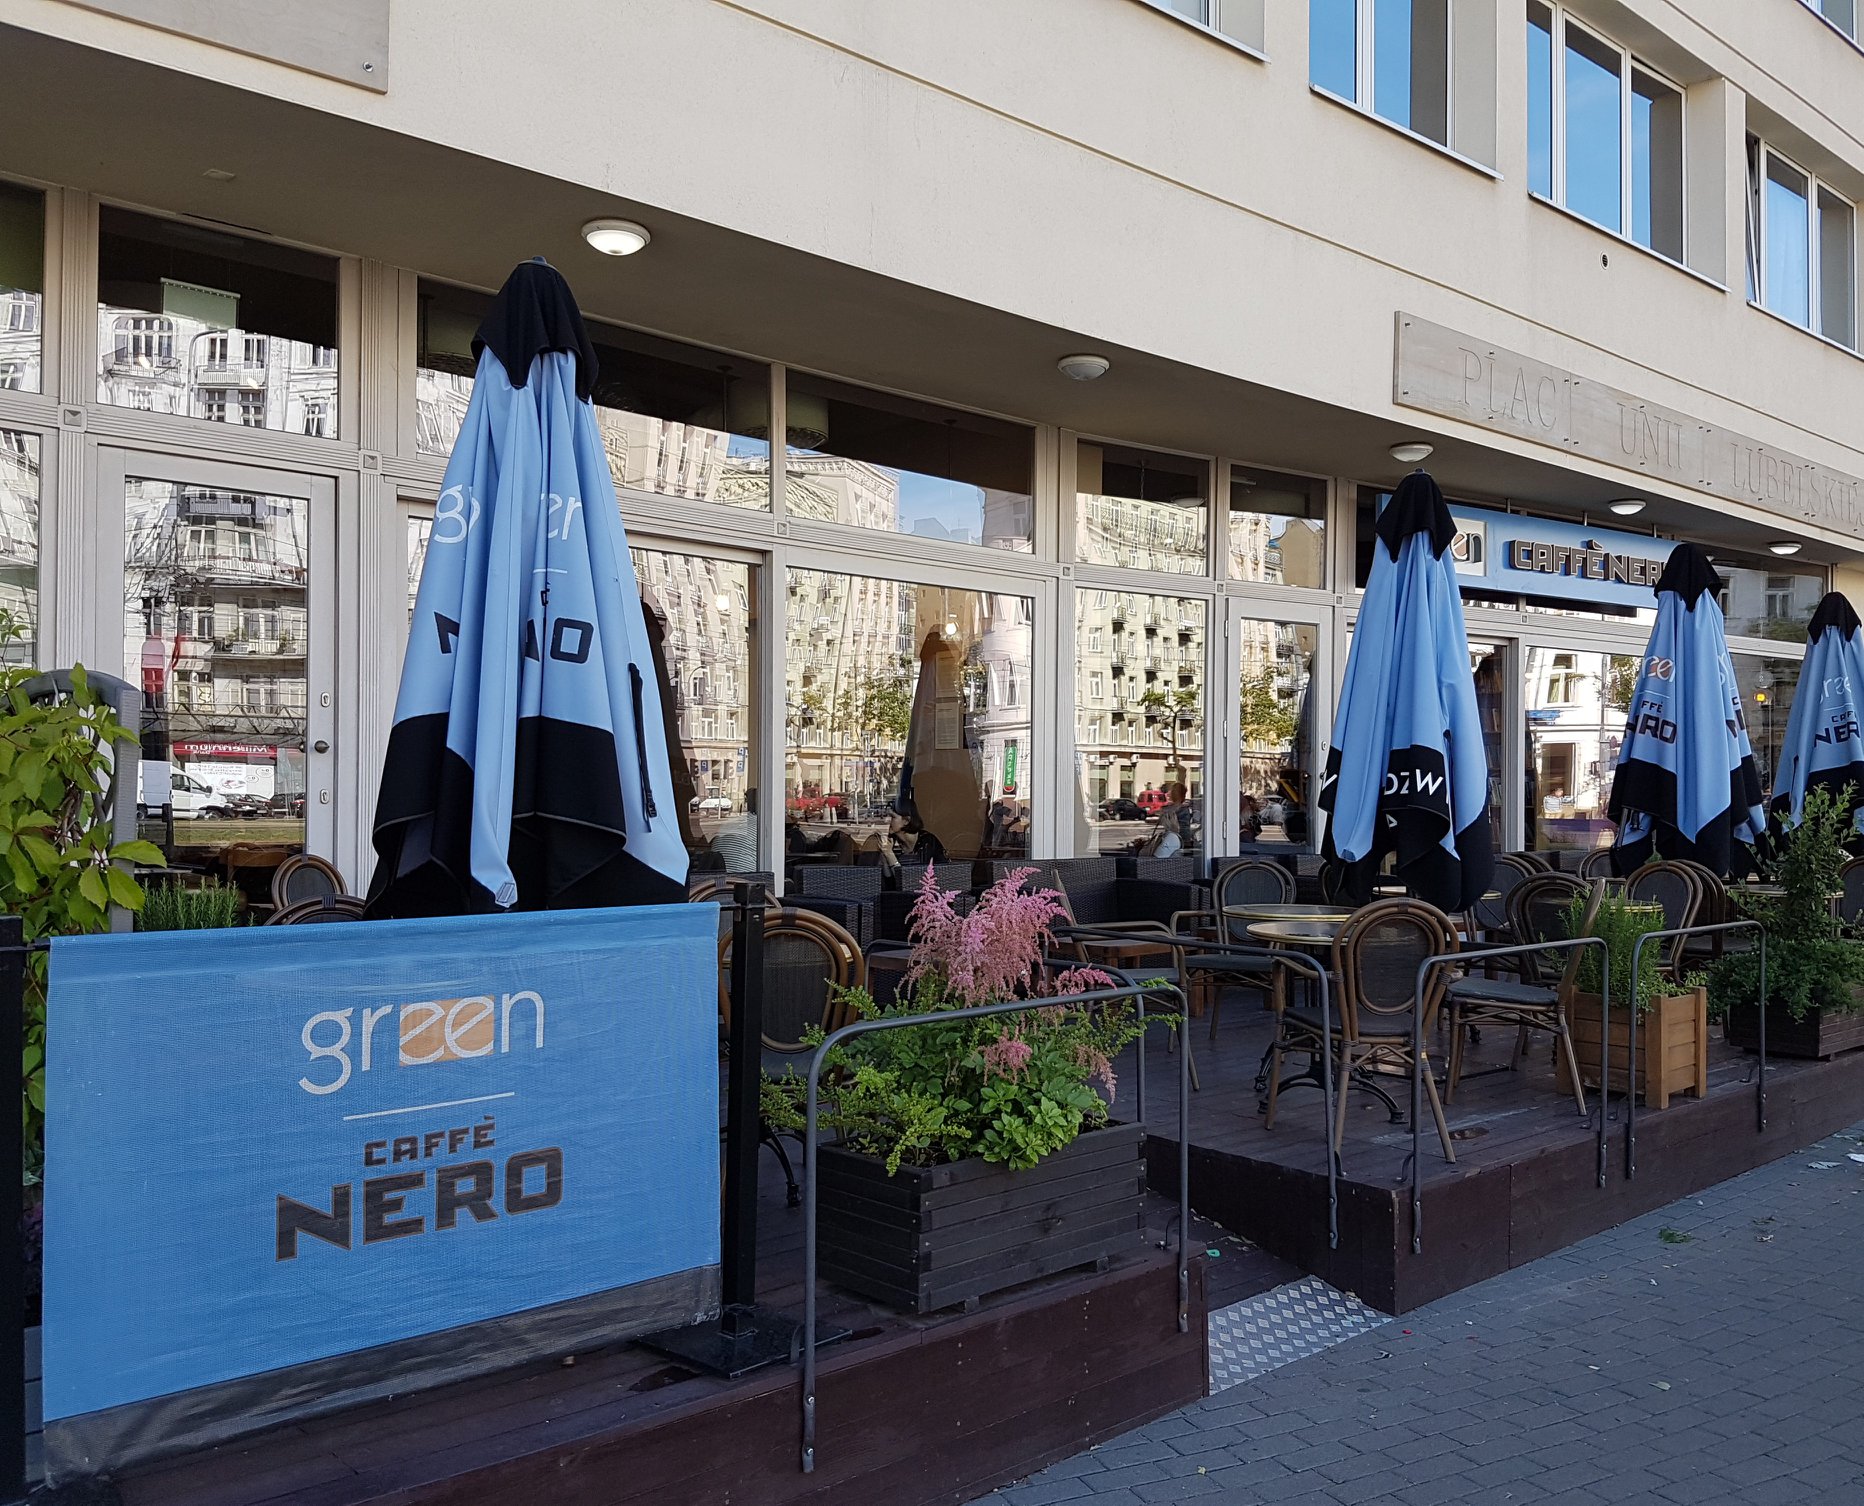 Green Caffe Nero: Ruch w kawiarniach jest bardzo zróżnicowany